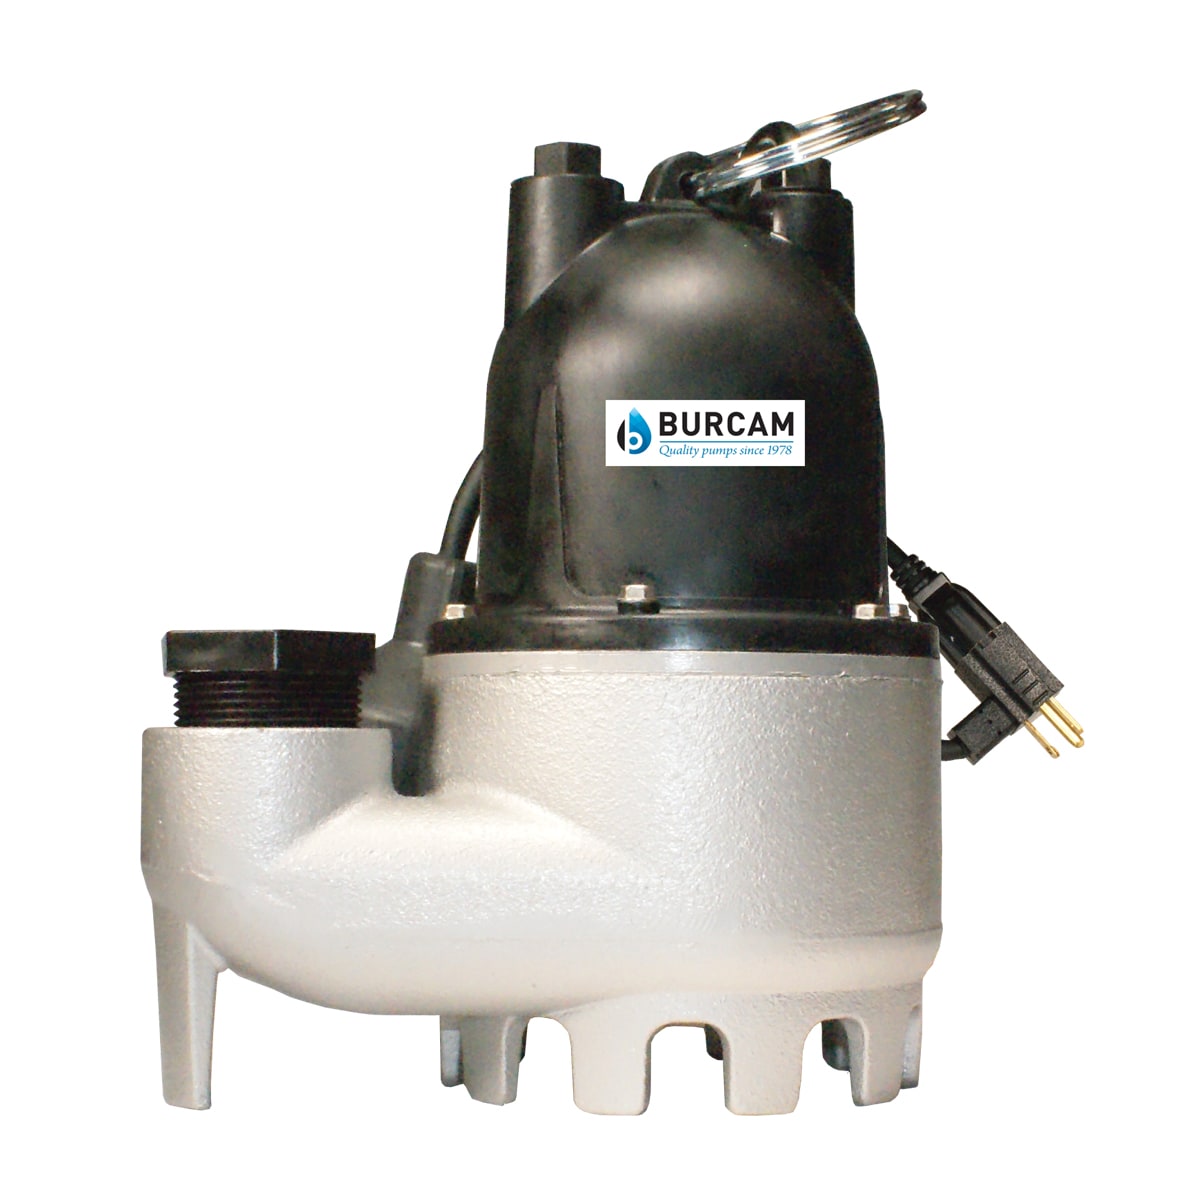 1/3-HP 115-Volt Cast Iron Submersible Sump Pump | - Burcam 300608Z